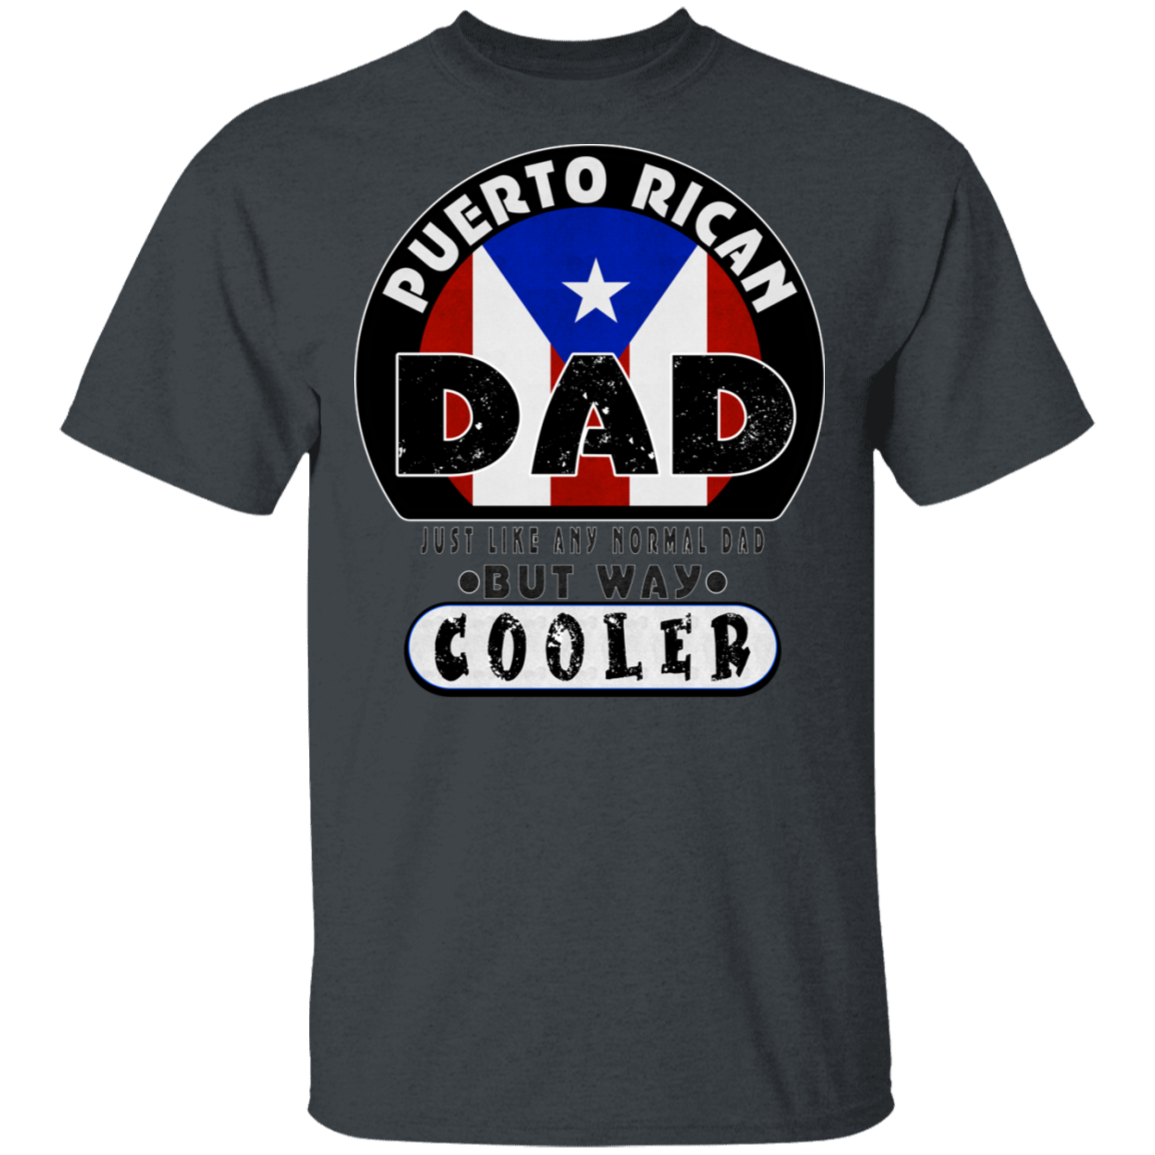 COOL DAD 5.3 oz. T-Shirt - Puerto Rican Pride